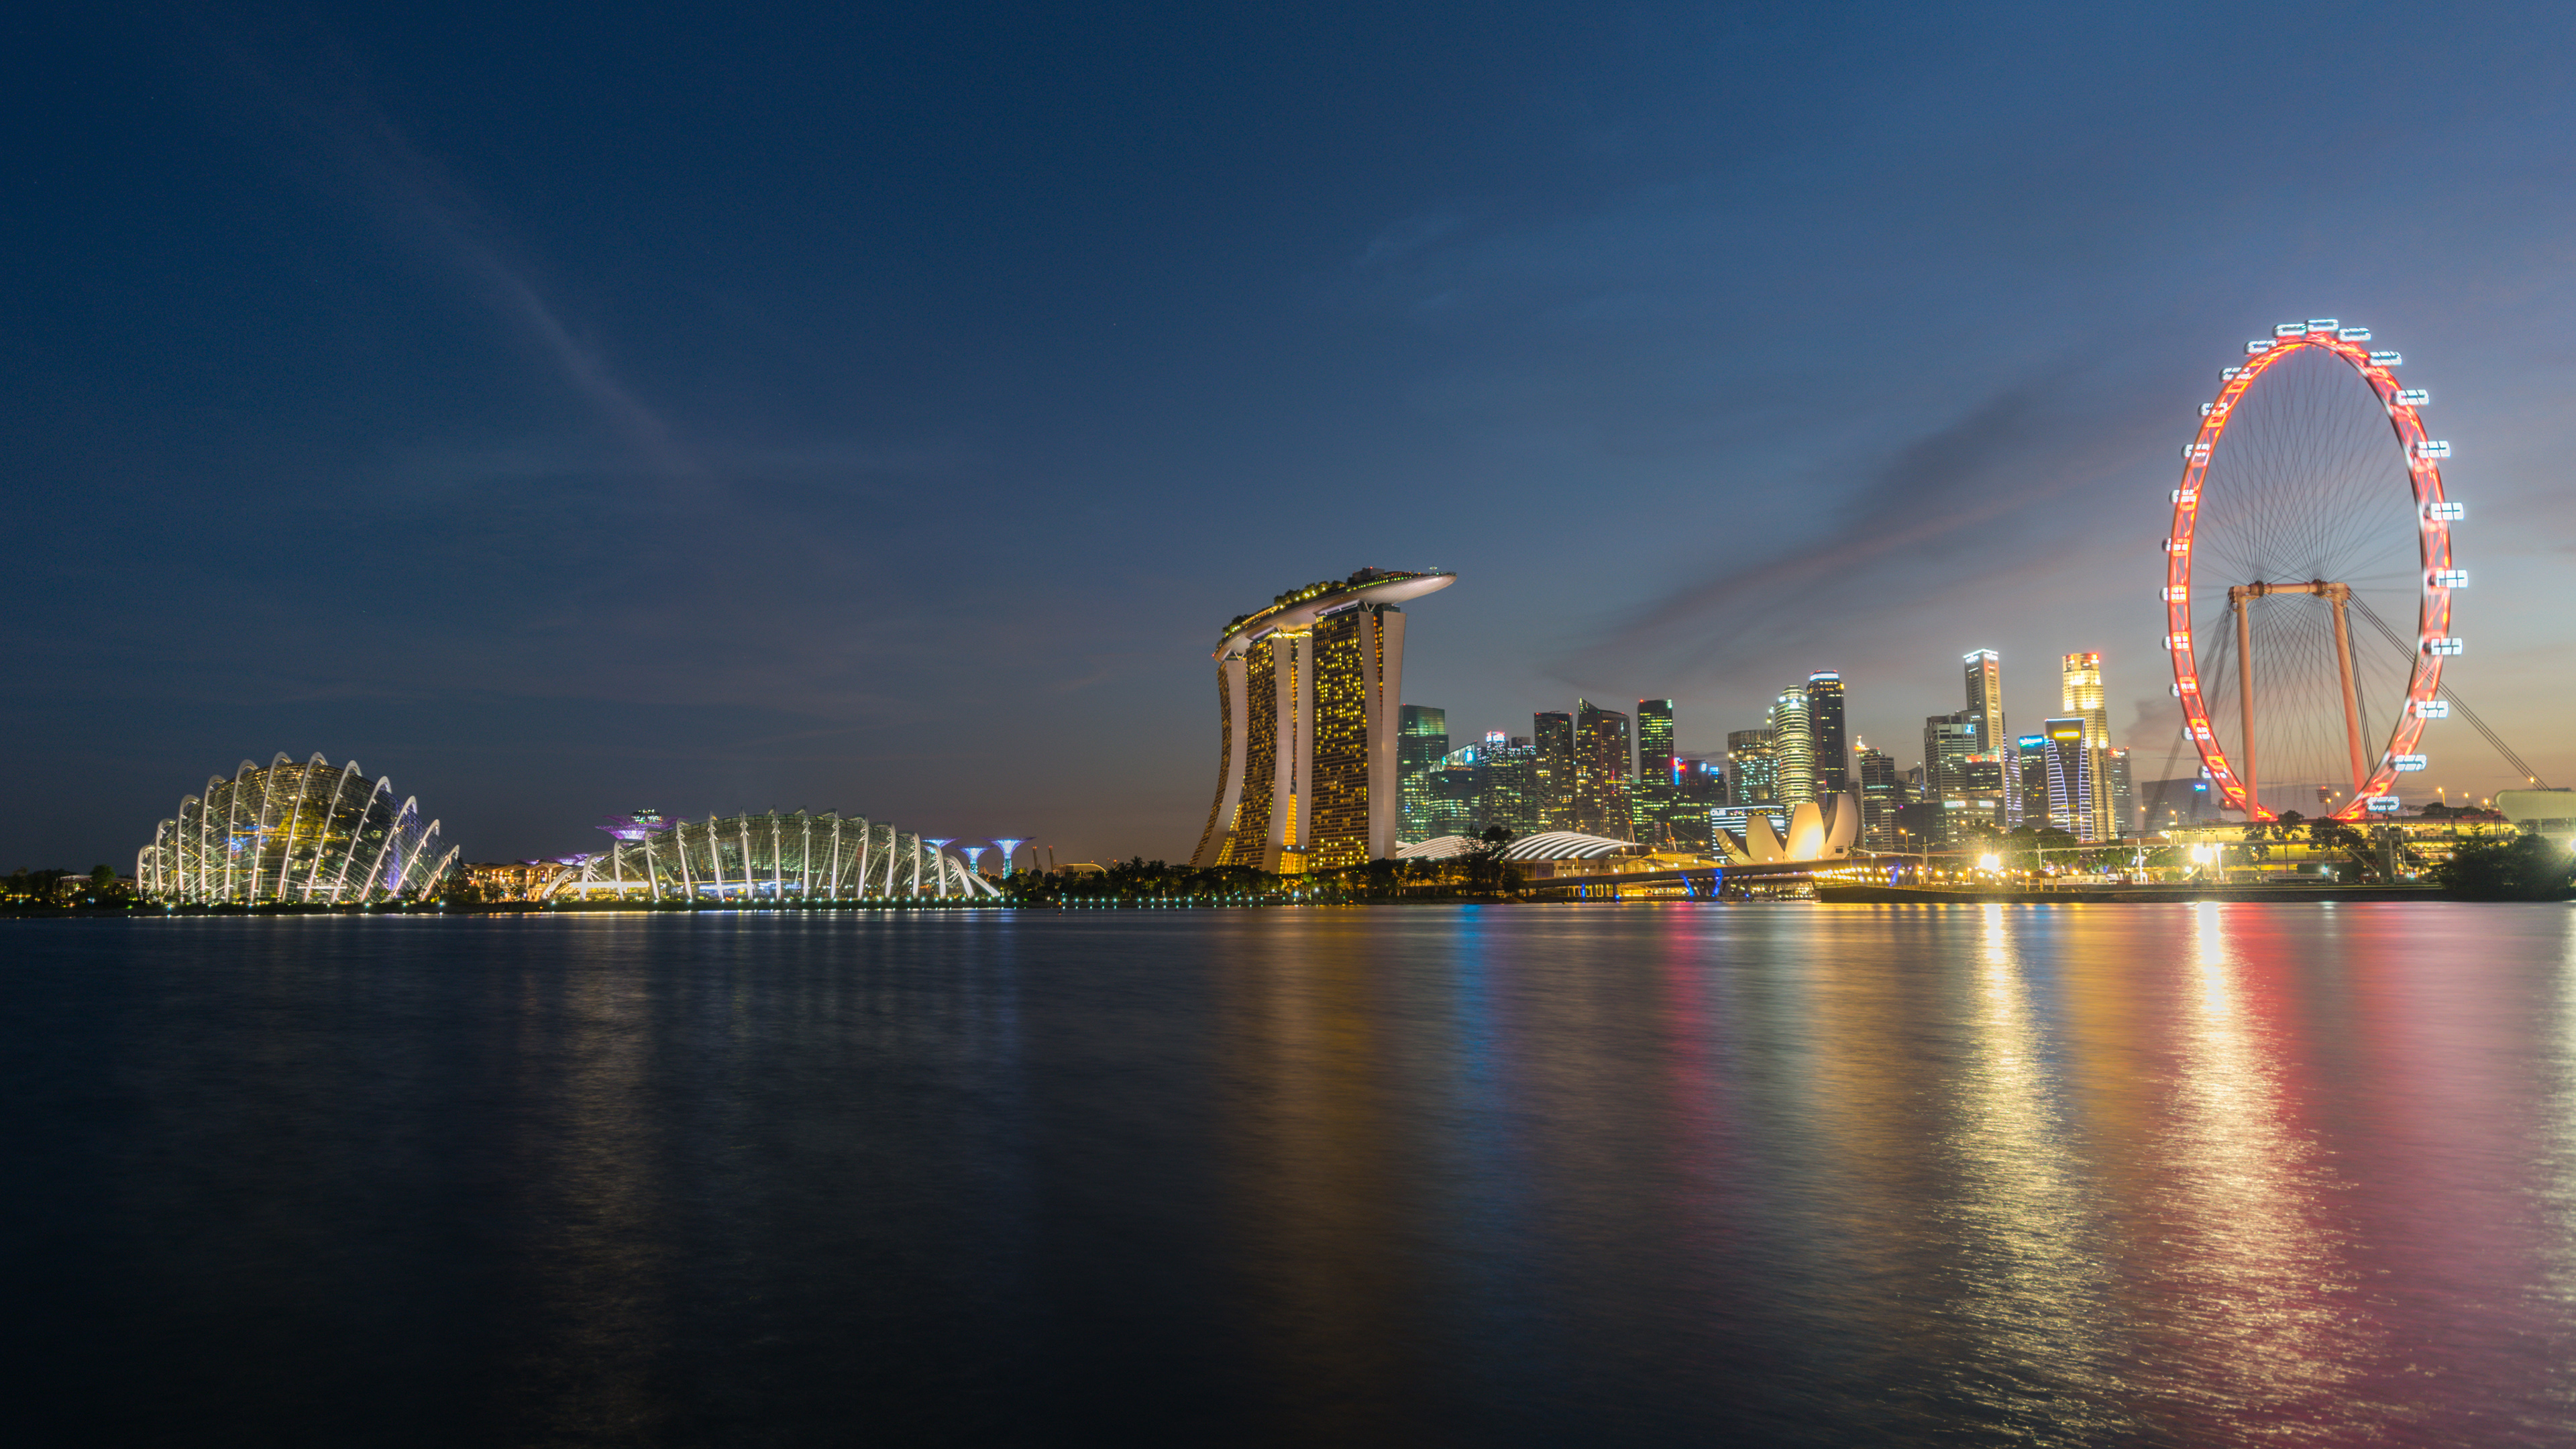 desktop Images man made, marina bay sands, building, night, singapore